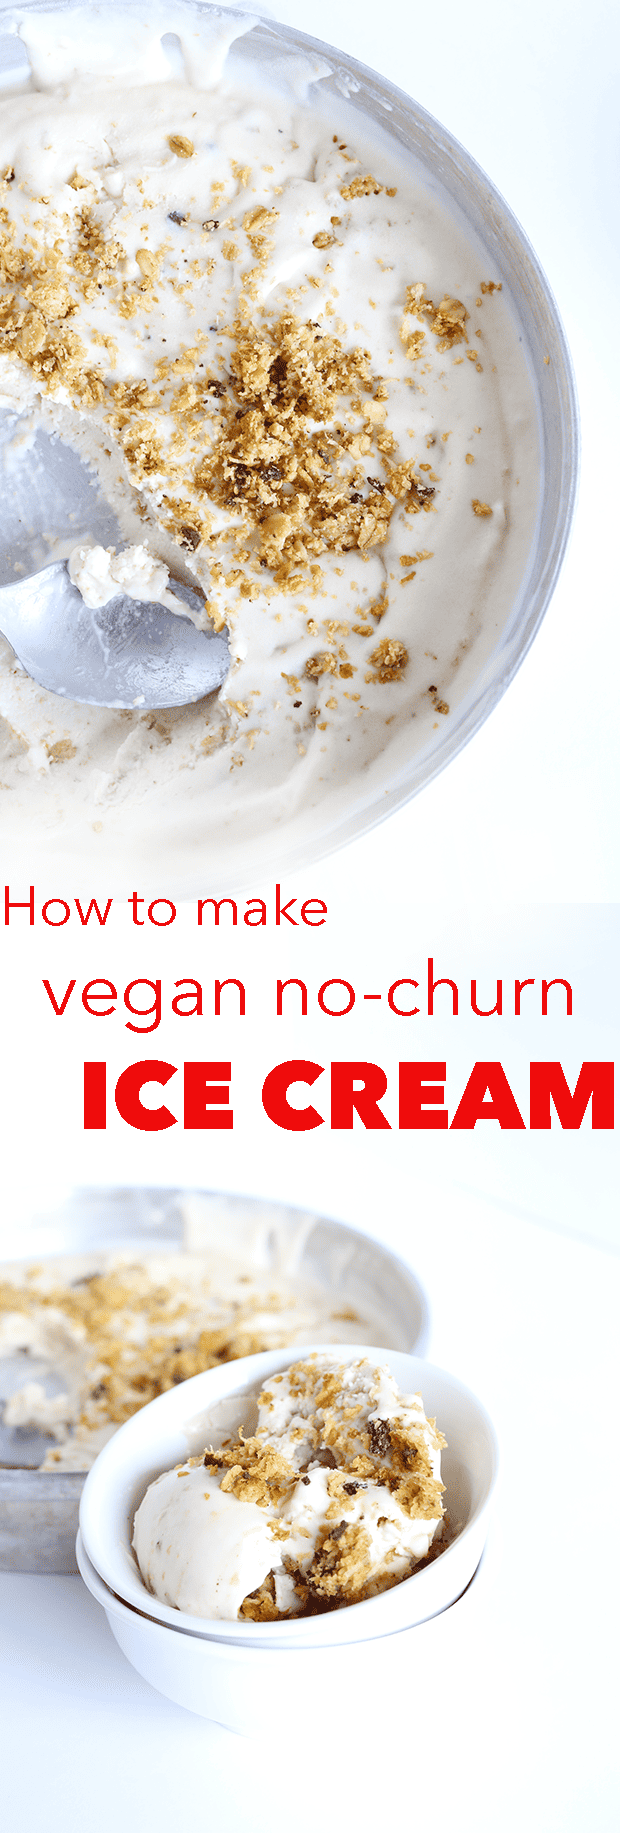 How to make Vegan Ice Cream 